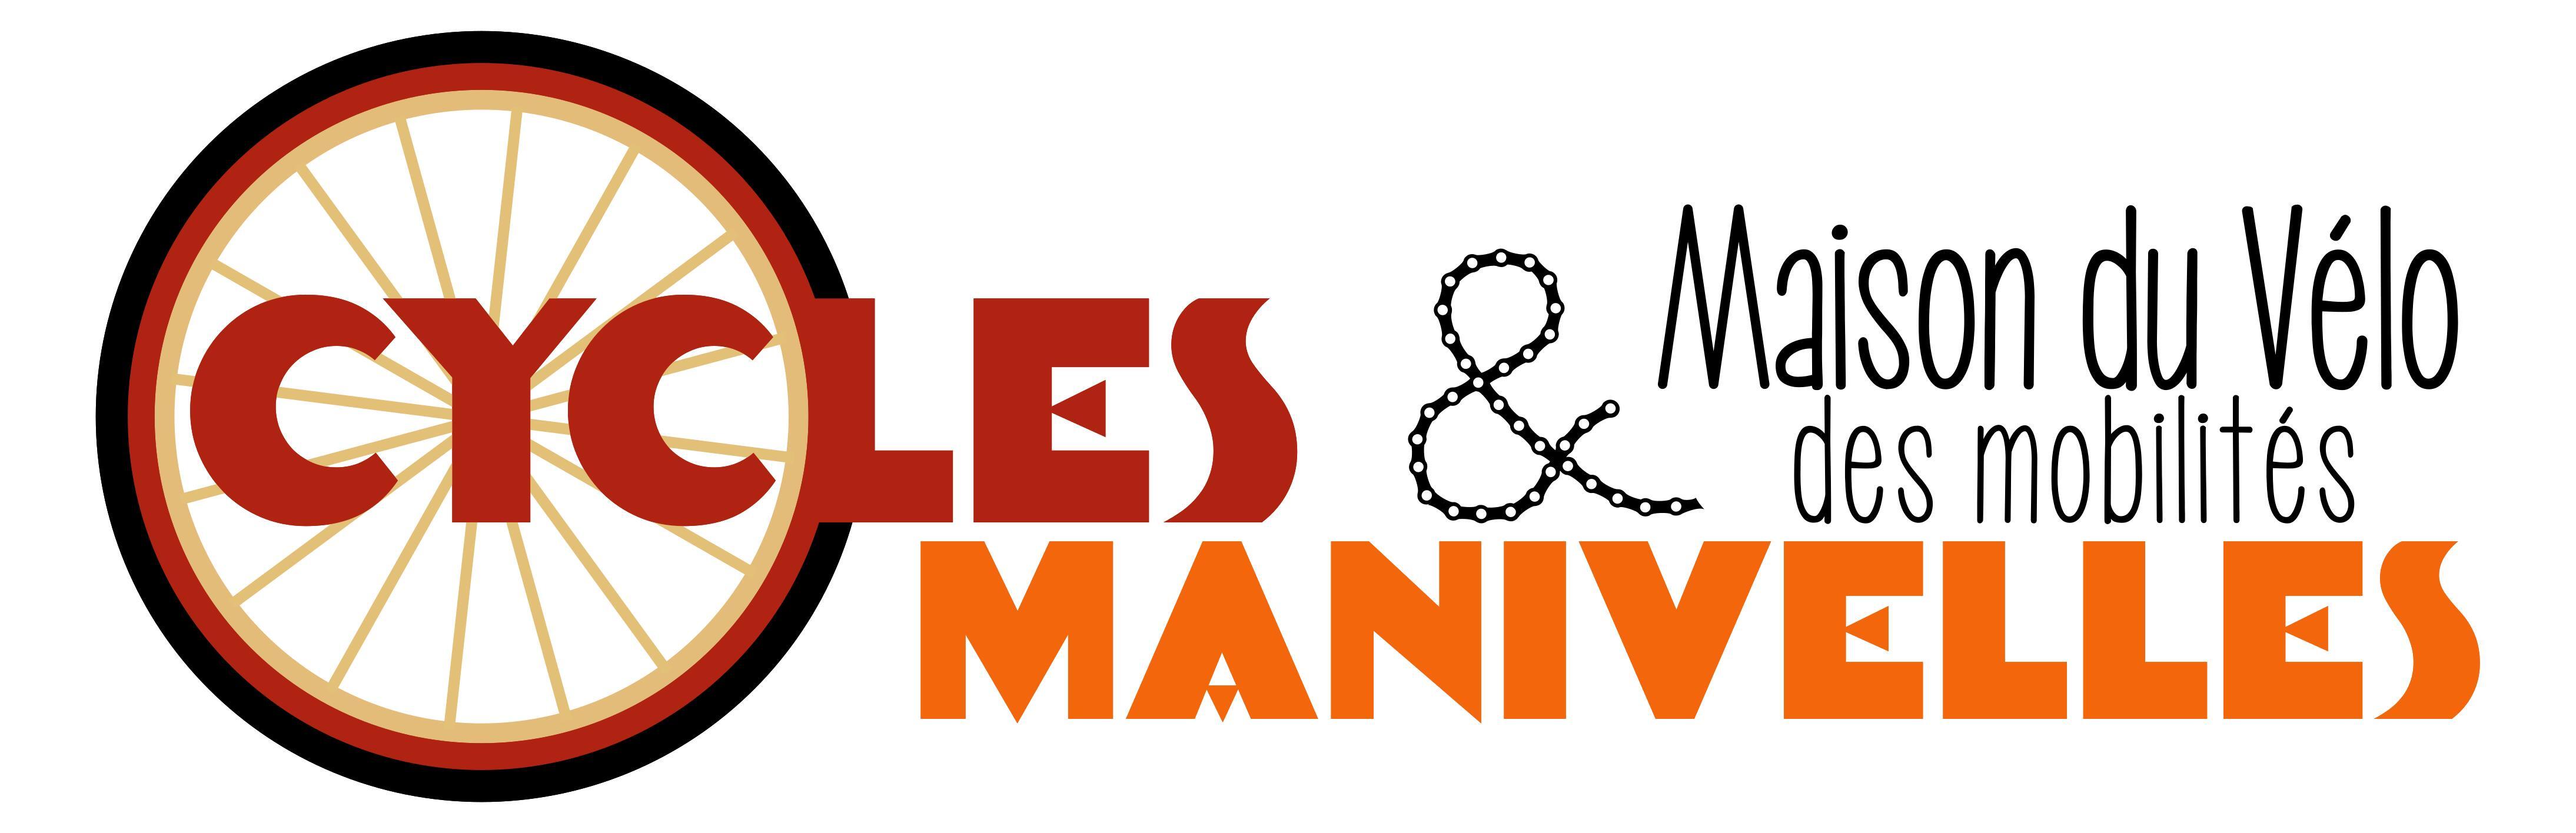 Logo Cycles et manivelles